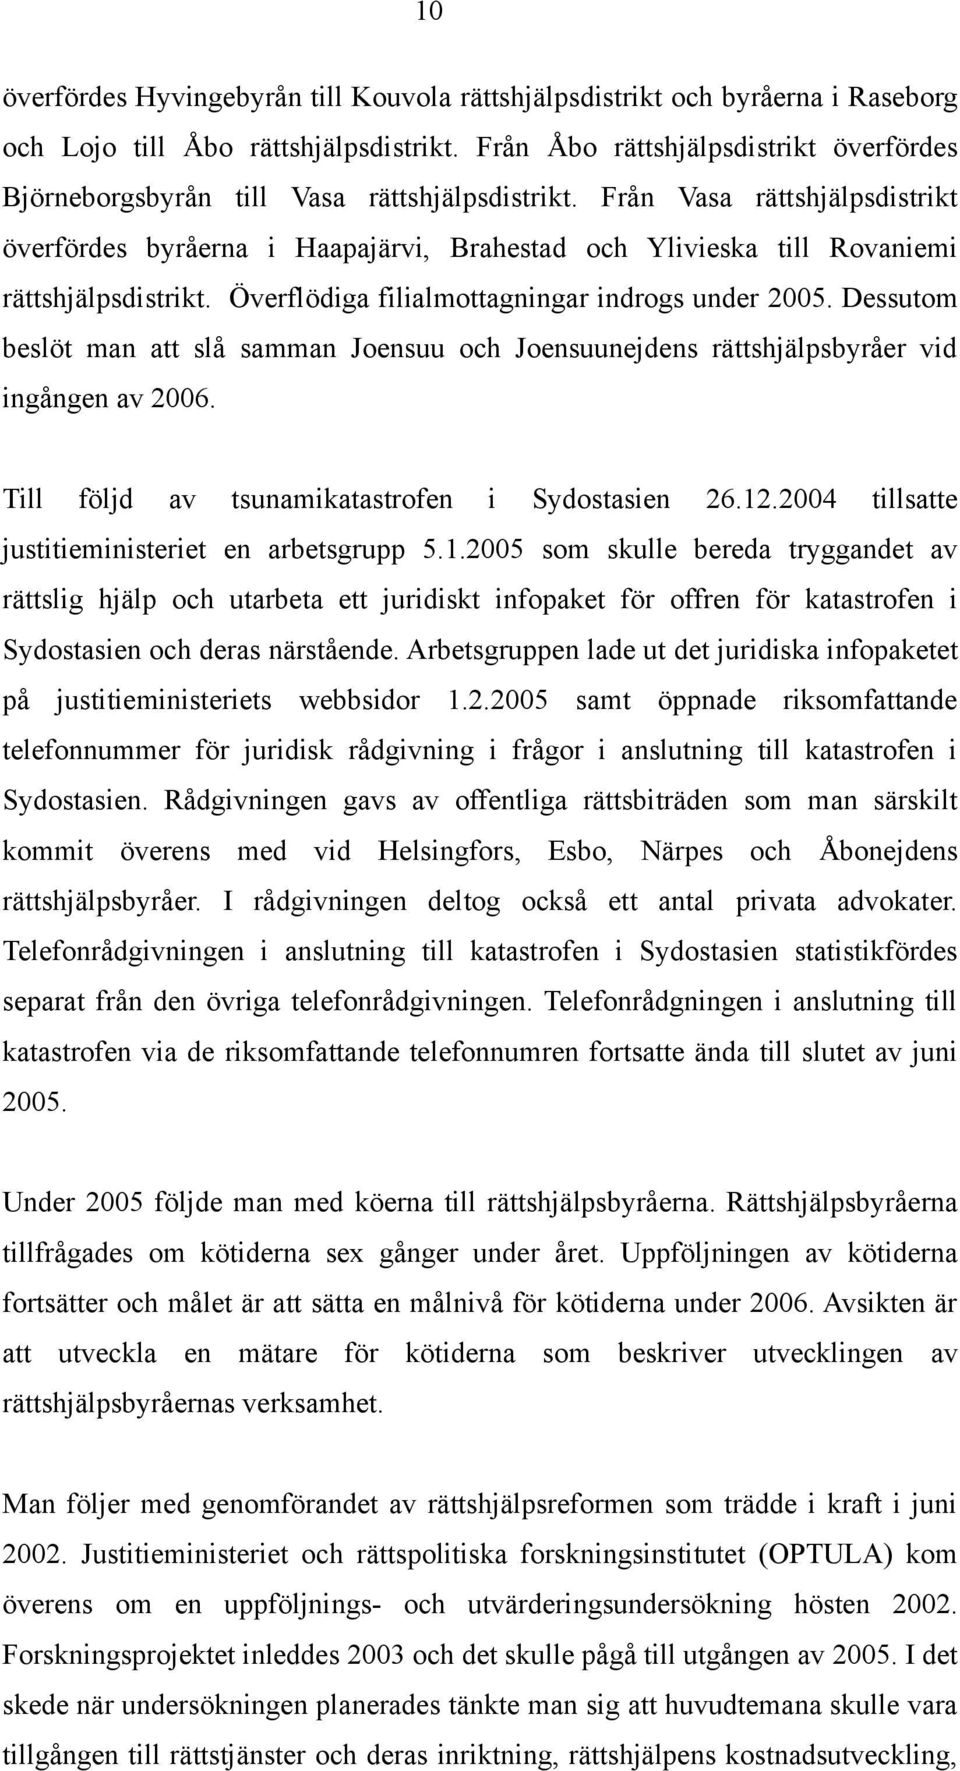 Från Vasa rättshjälpsdistrikt överfördes byråerna i Haapajärvi, Brahestad och Ylivieska till Rovaniemi rättshjälpsdistrikt. Överflödiga filialmottagningar indrogs under 2005.